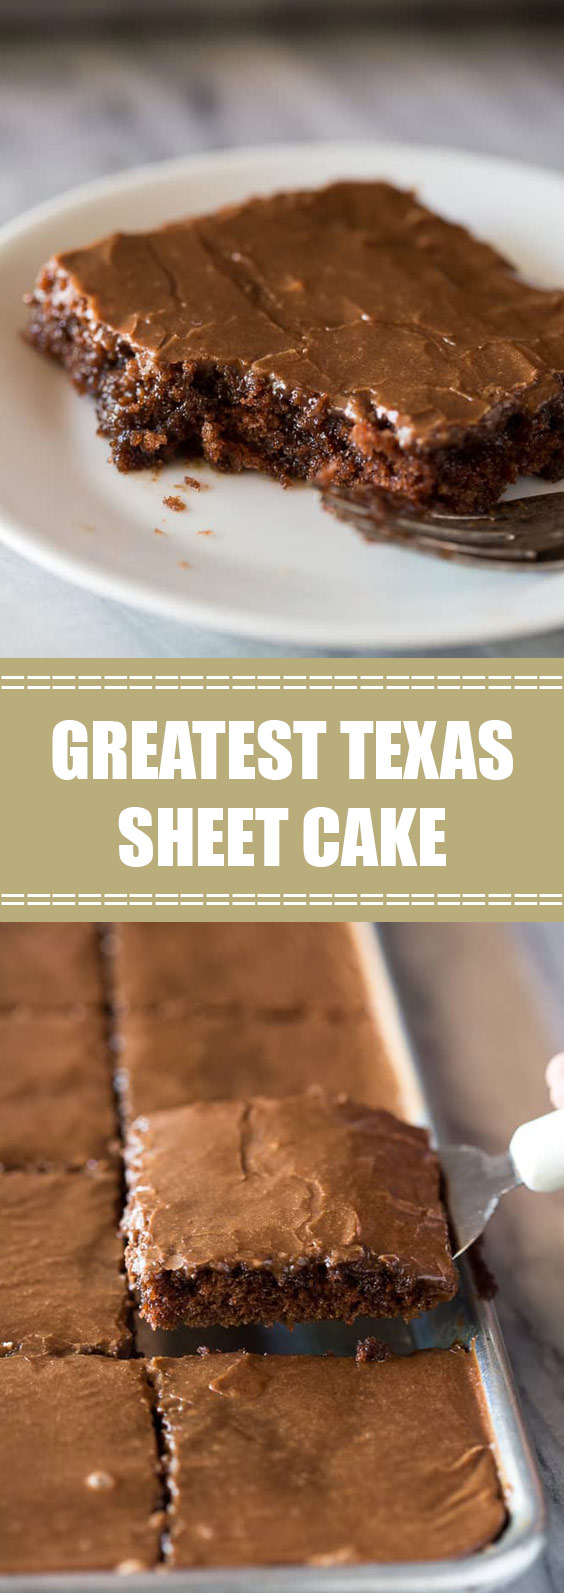 Greatest Texas Sheet Cake #cakerecipes #texassheetcake - tarbiunasa ...